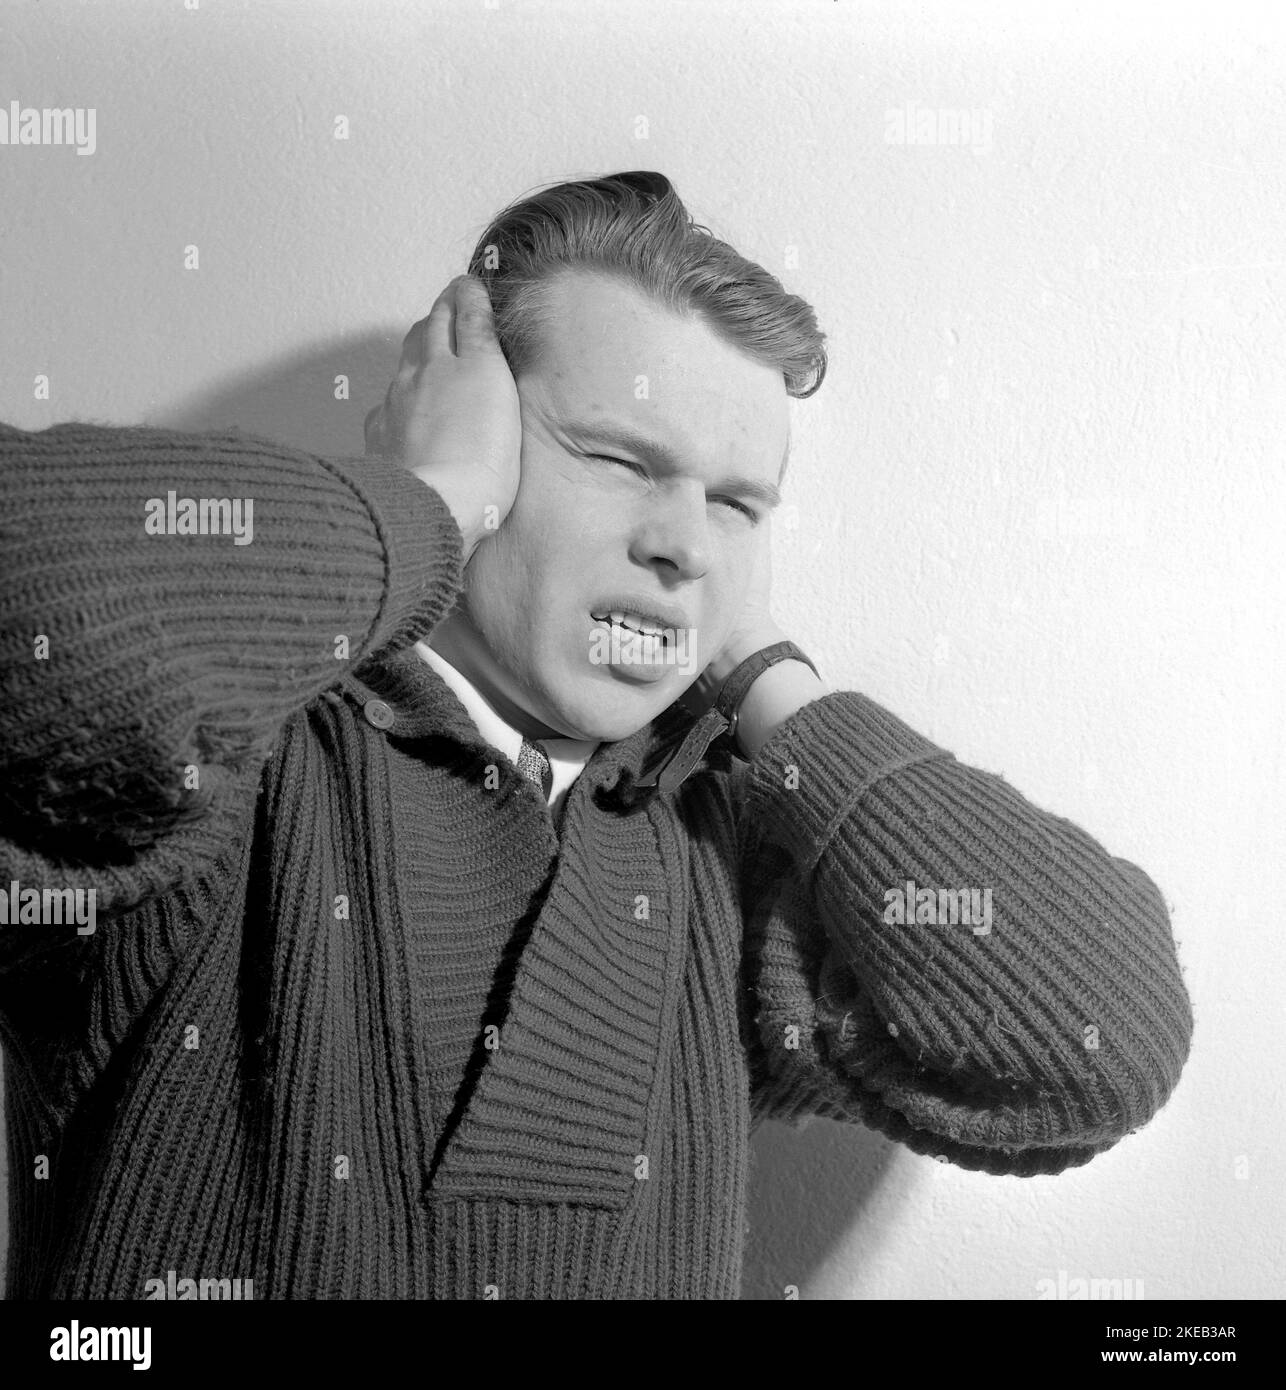 En la década de 1950s. Un joven sostiene sus manos sobre sus oídos y tiene una expresión facial que indica que puede ser sensible al sonido, trastorno auditivo, depresión, dolor de cabeza o enfermedad psiciátrica. Suecia 1956. Conard ref 3190 Foto de stock